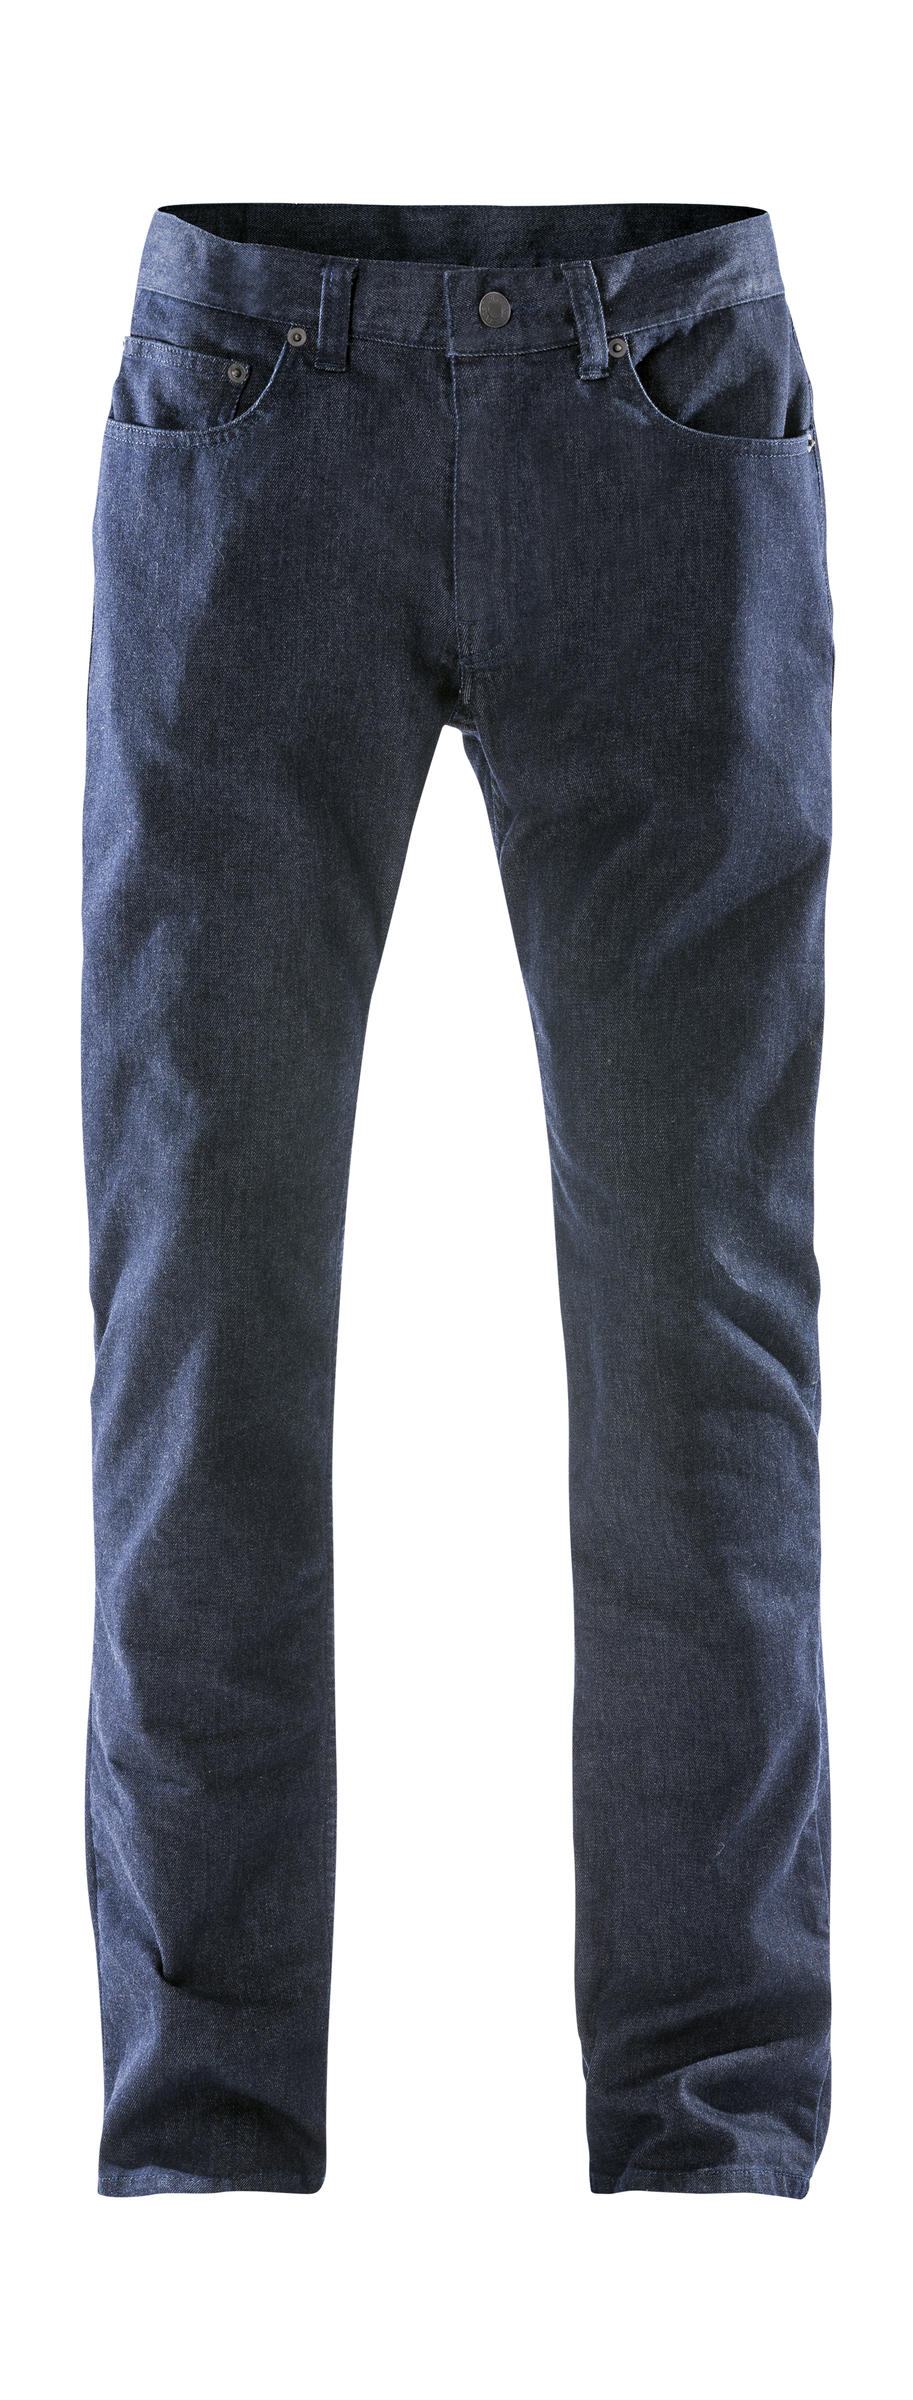 Fristads Jeans Stretch 2623 Dcs